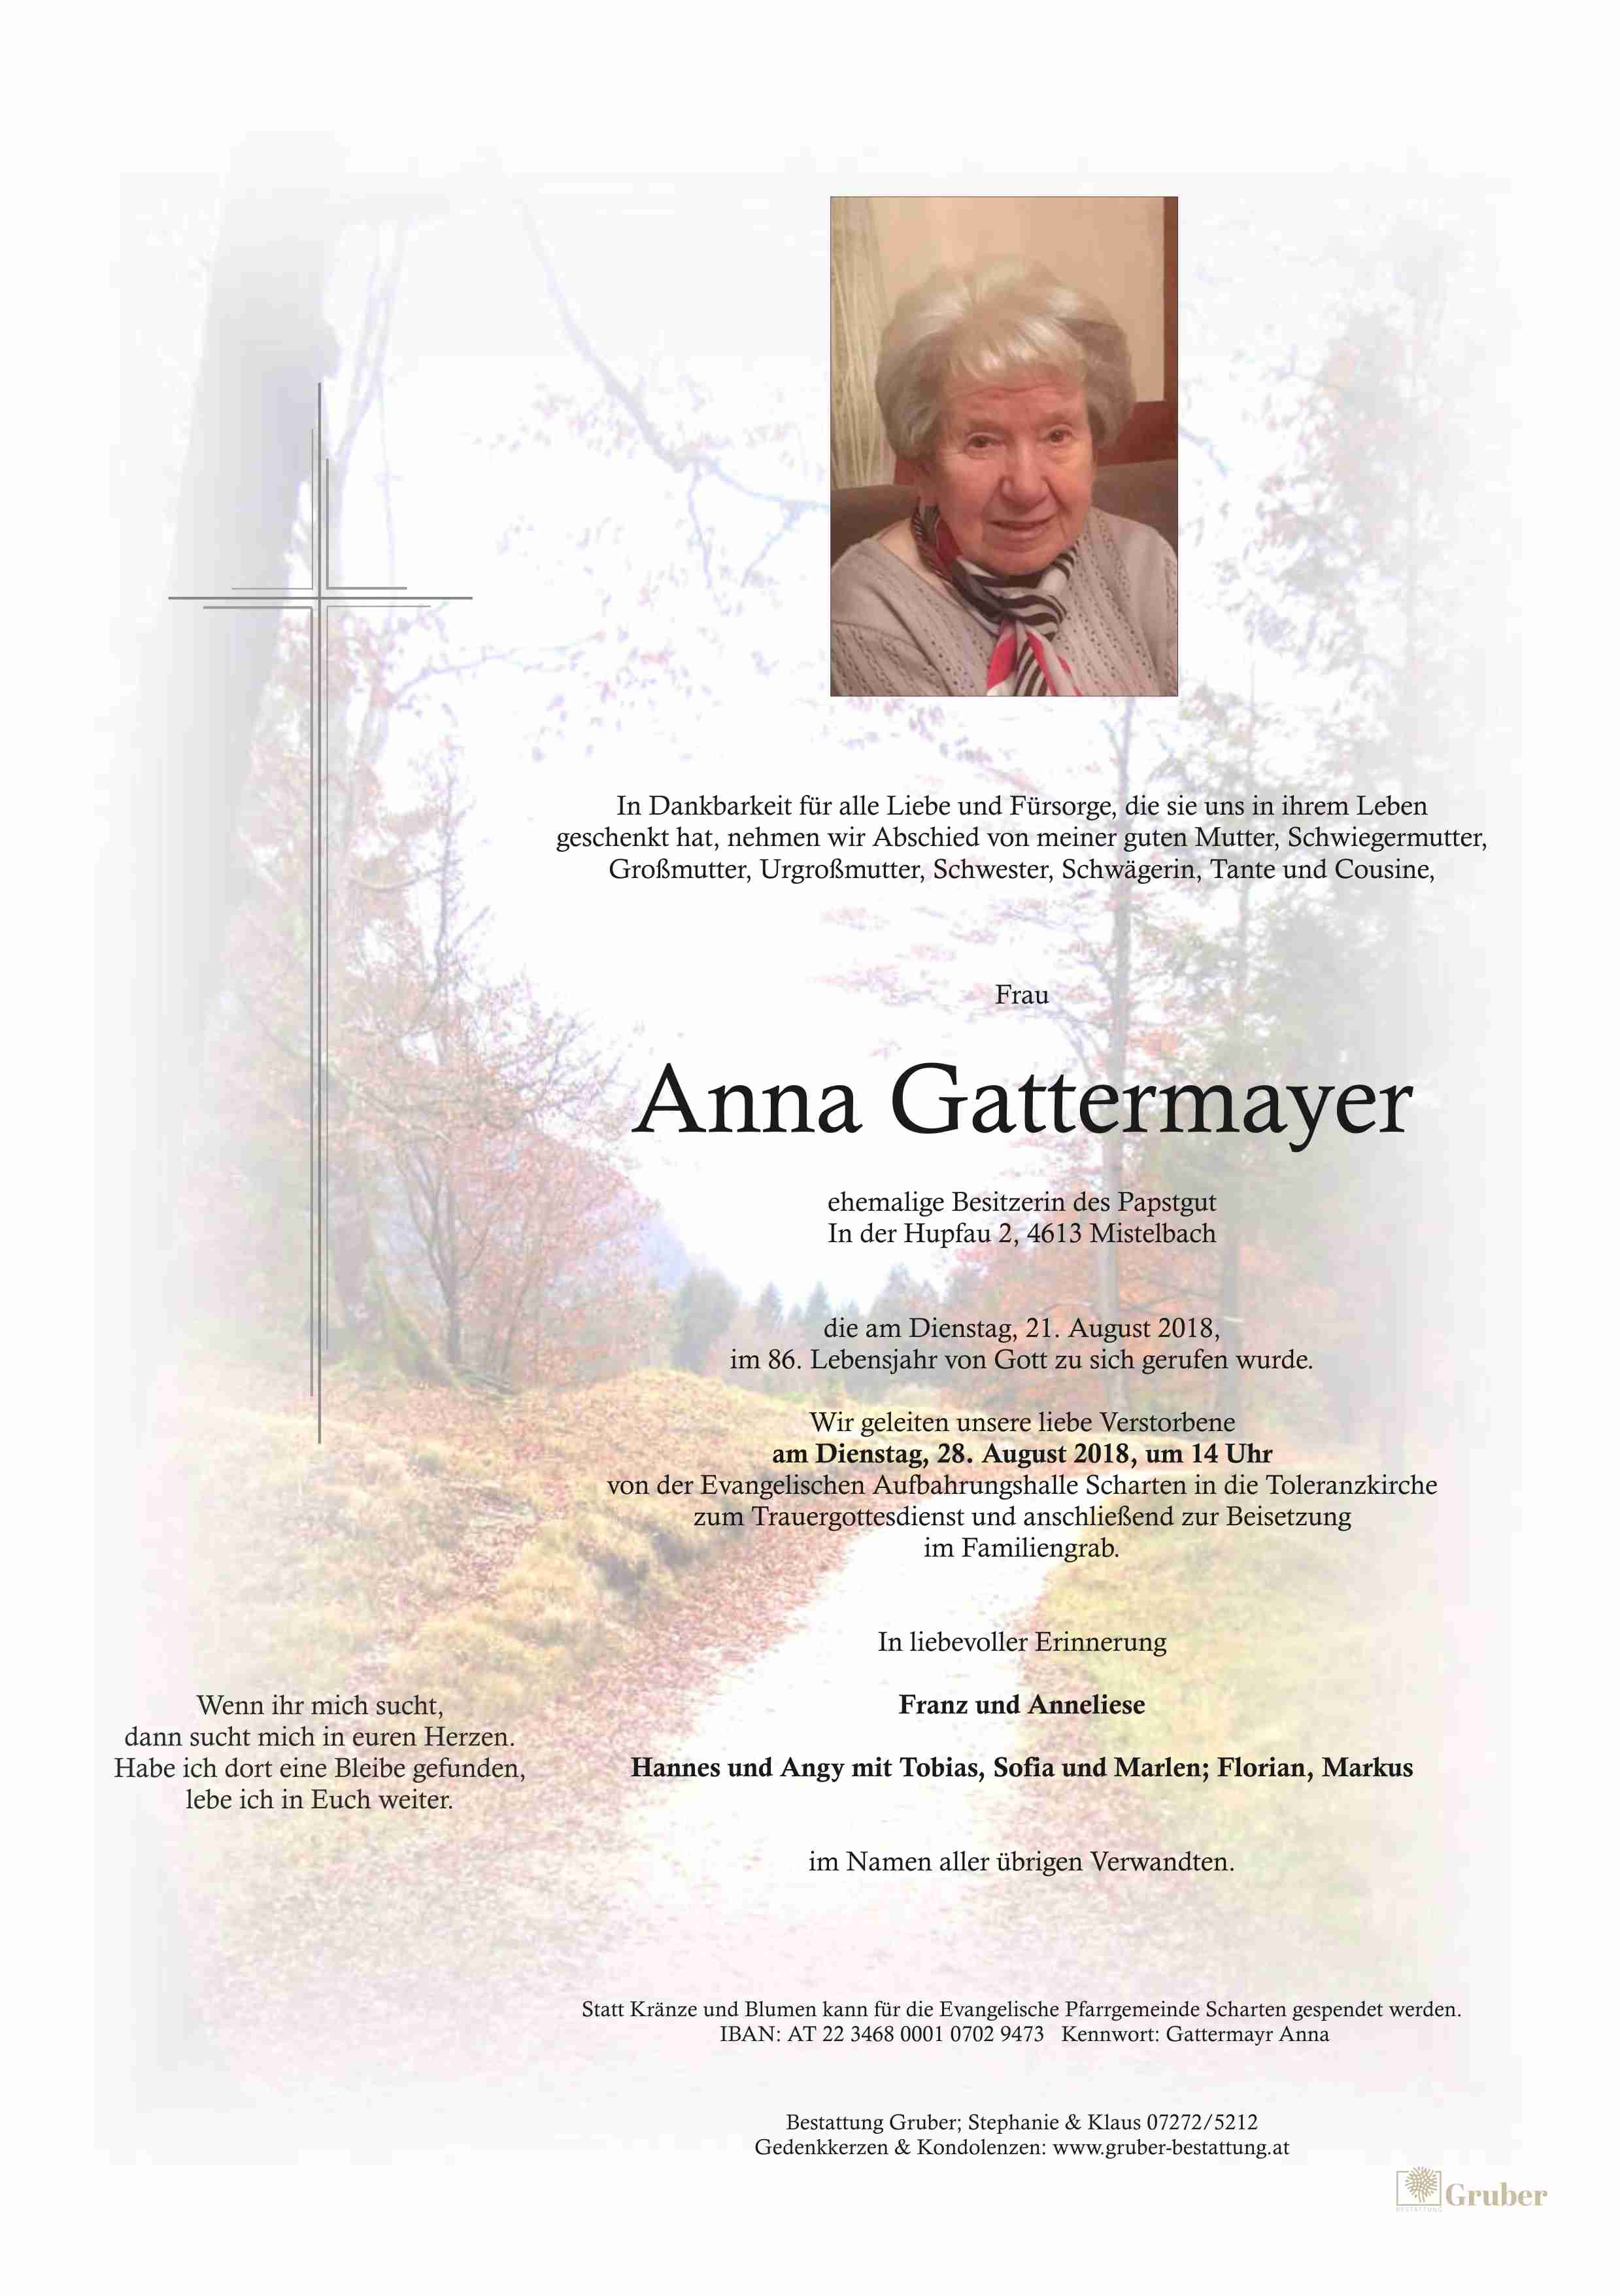 Anna Gattermayer (Scharten Evang.)